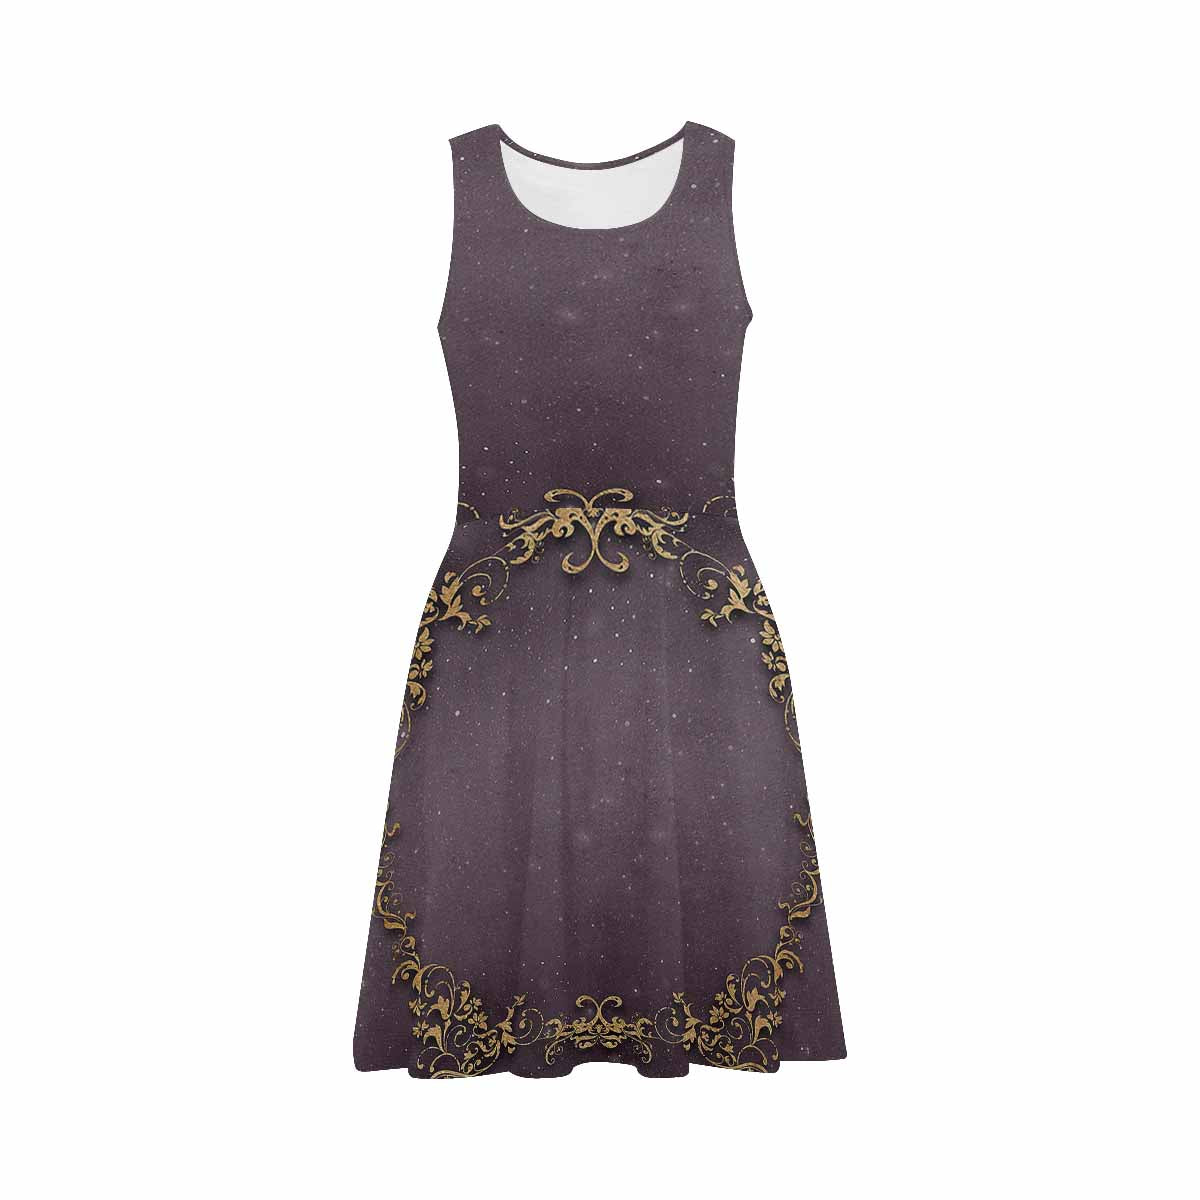 Antique General summer dress, MODEL 09534, design 43